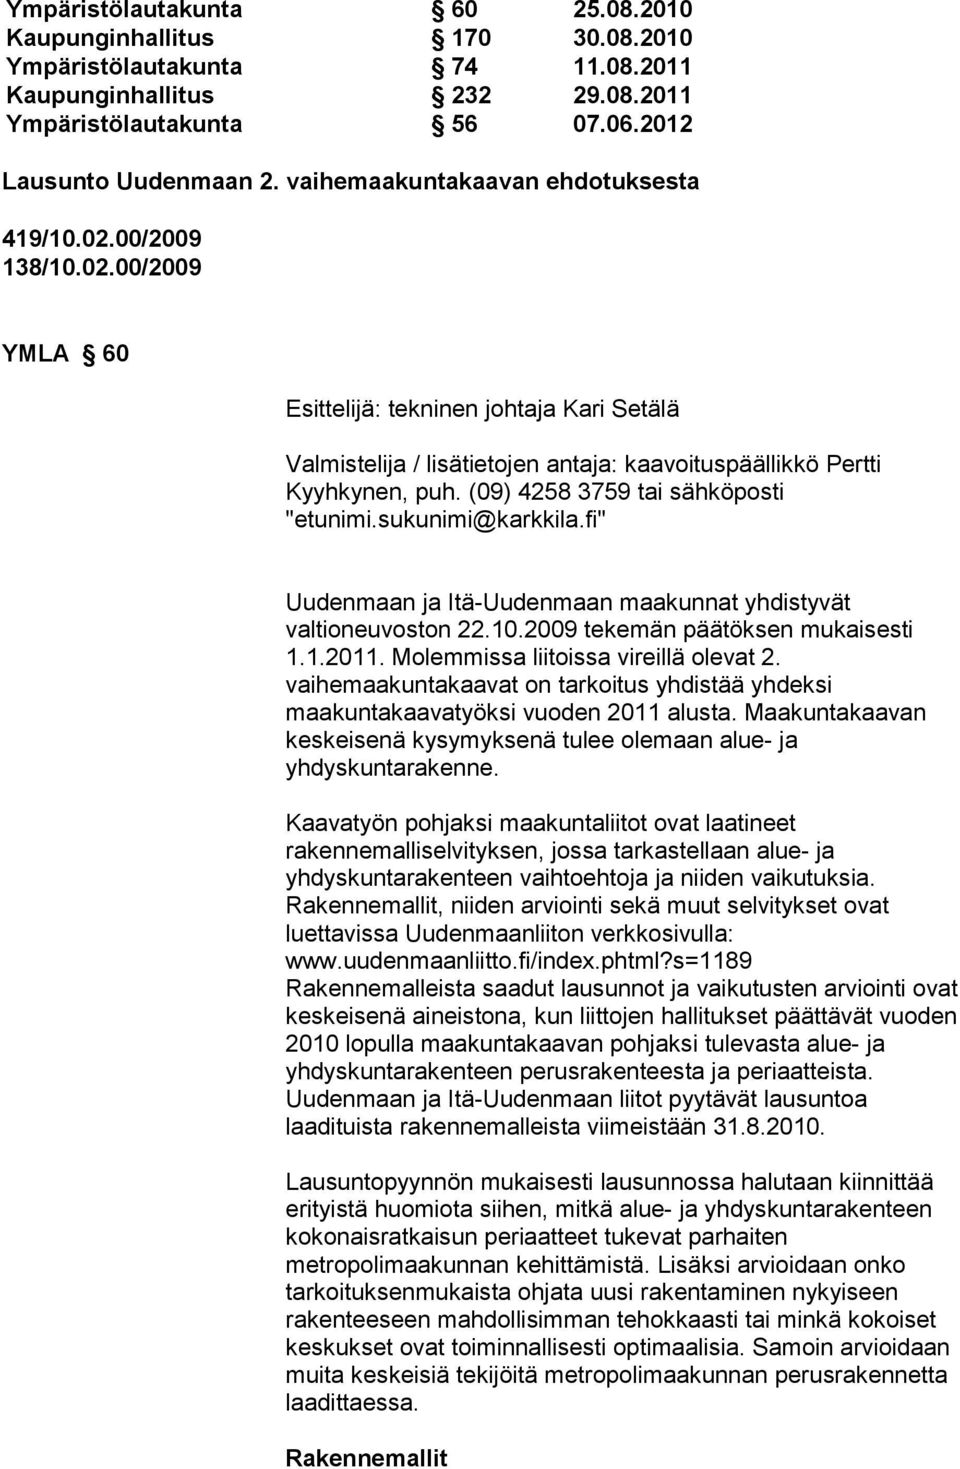 (09) 4258 3759 tai sähköposti "etunimi.sukunimi@karkkila.fi" Uudenmaan ja Itä-Uudenmaan maakunnat yhdistyvät valtioneuvoston 22.10.2009 tekemän päätöksen mukaisesti 1.1.2011.